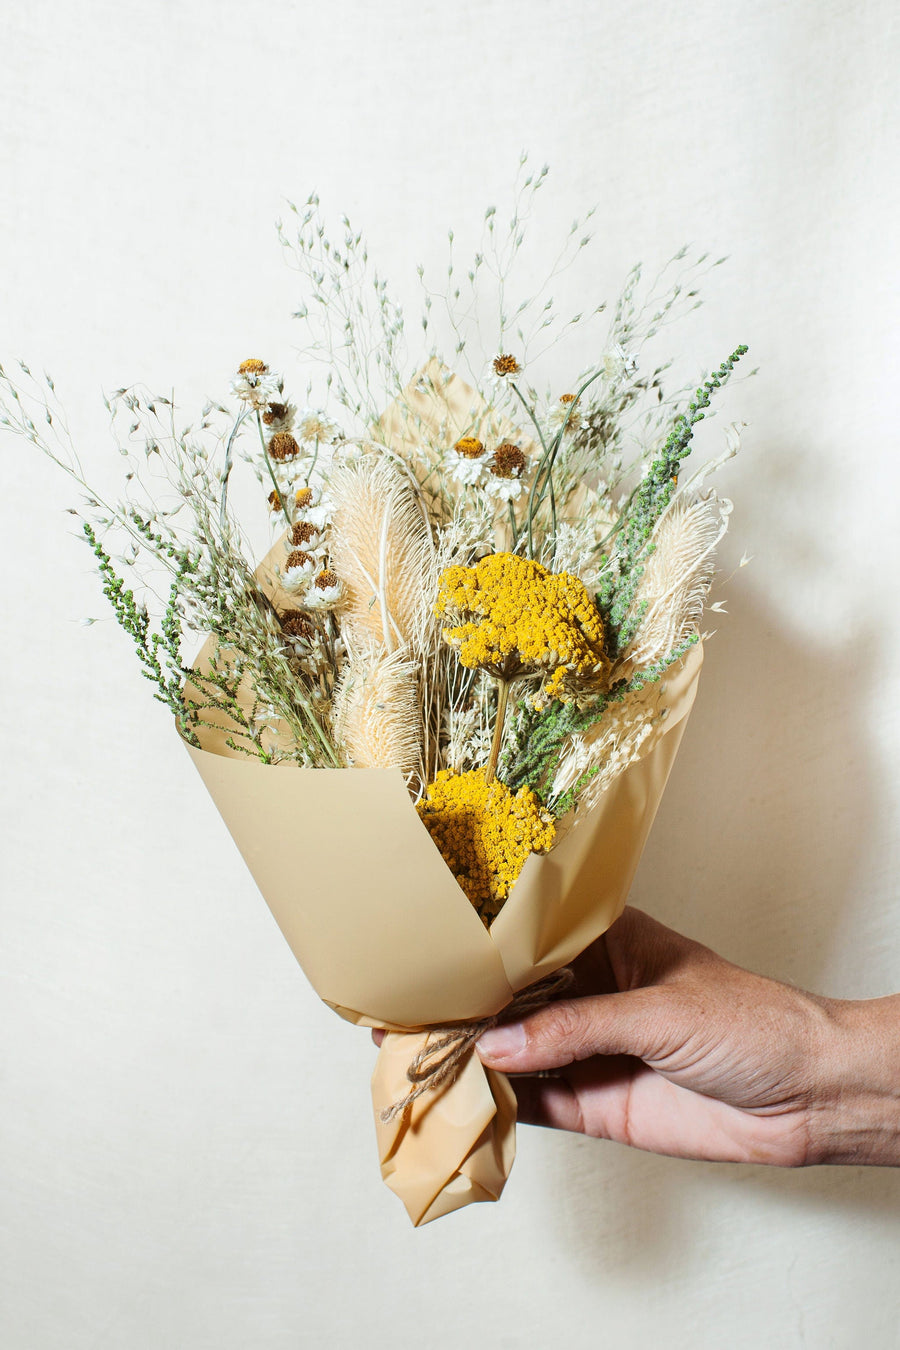 Idlewild Floral Co. Bouquets Citrine Petite Bouquet with Vase